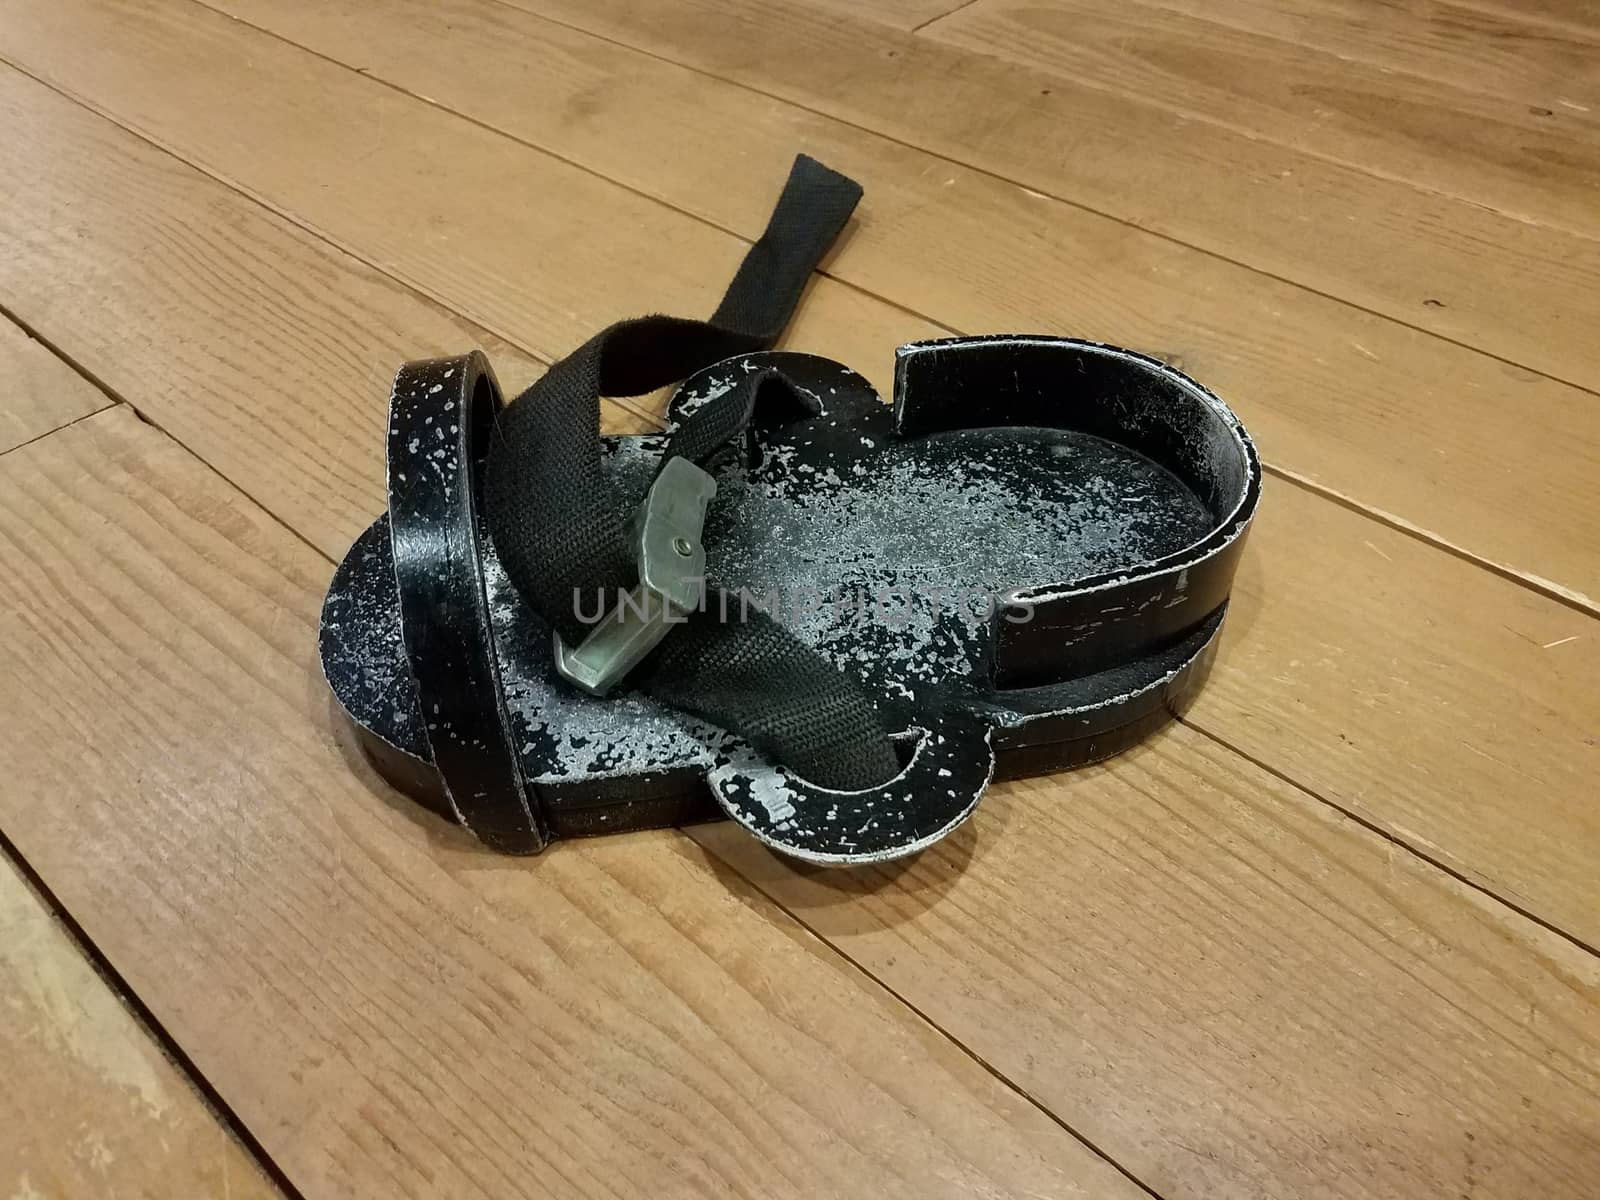 black metal weighted shoe on brown wood floor by stockphotofan1